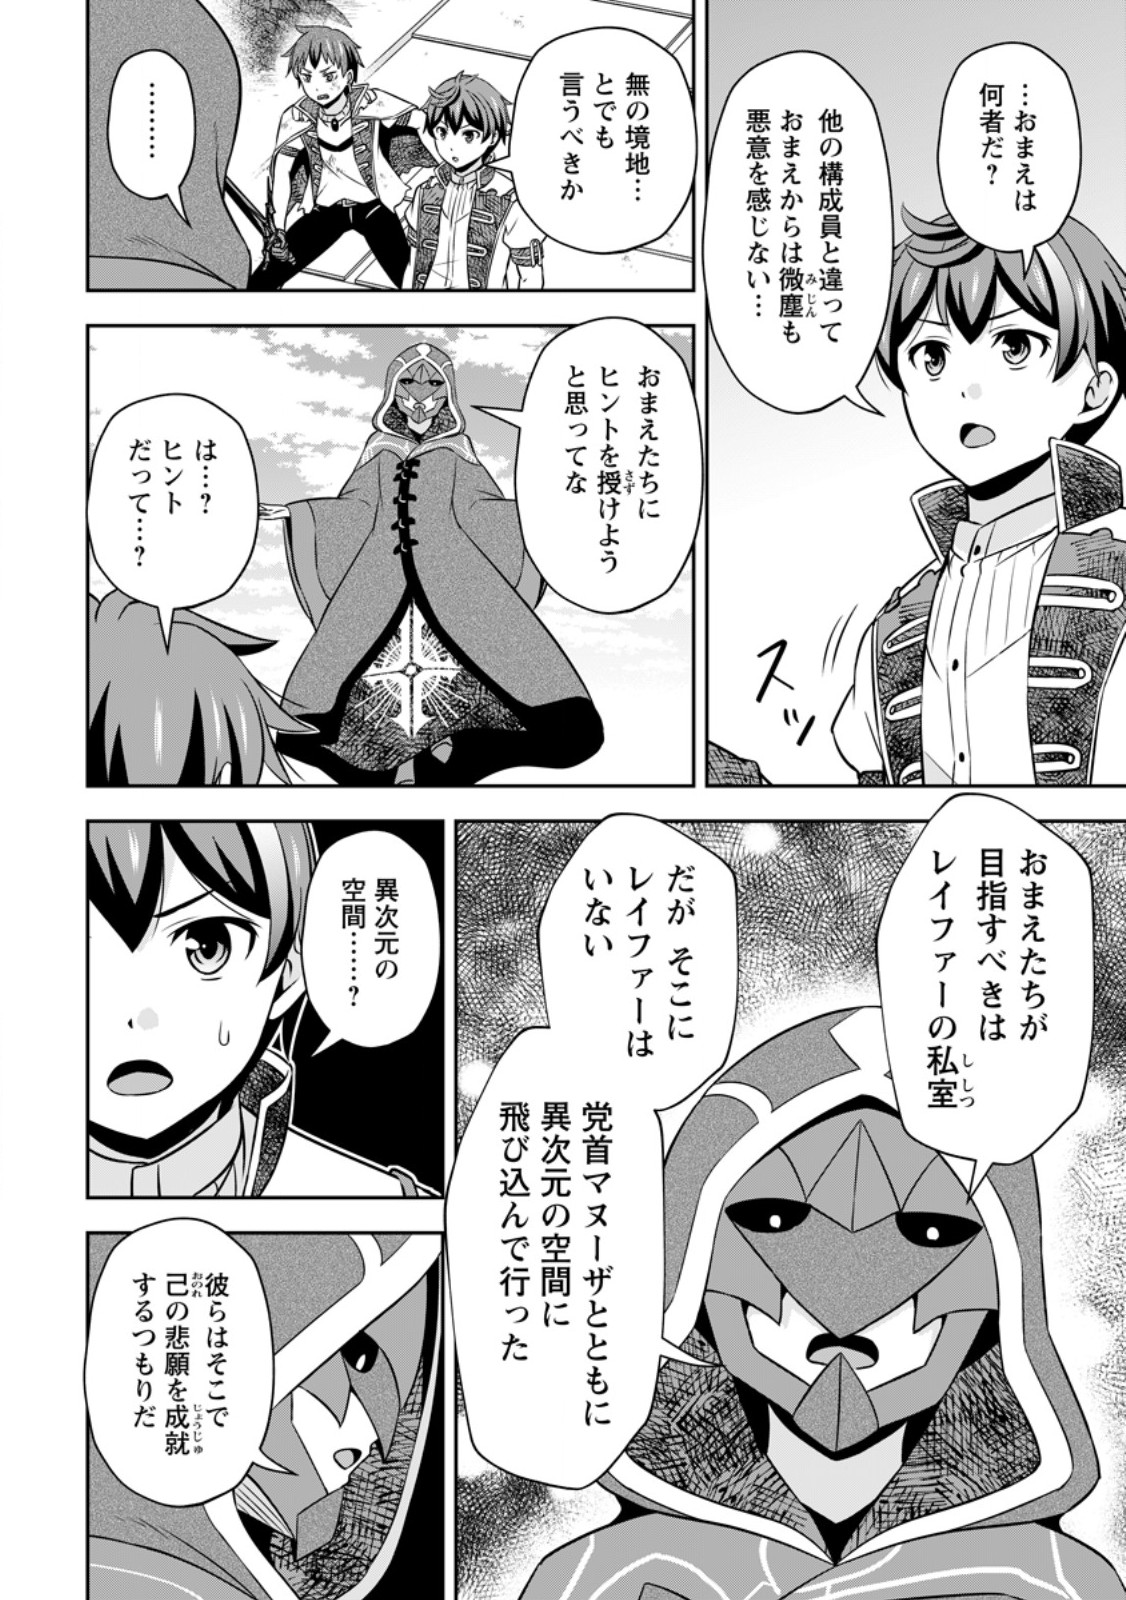 Oi, Hazure Skill dato Omowareteita Cheat Code Sousa ga Bakemono Sugiru ndaga (Tomokichi) - Chapter 21.1 - Page 2